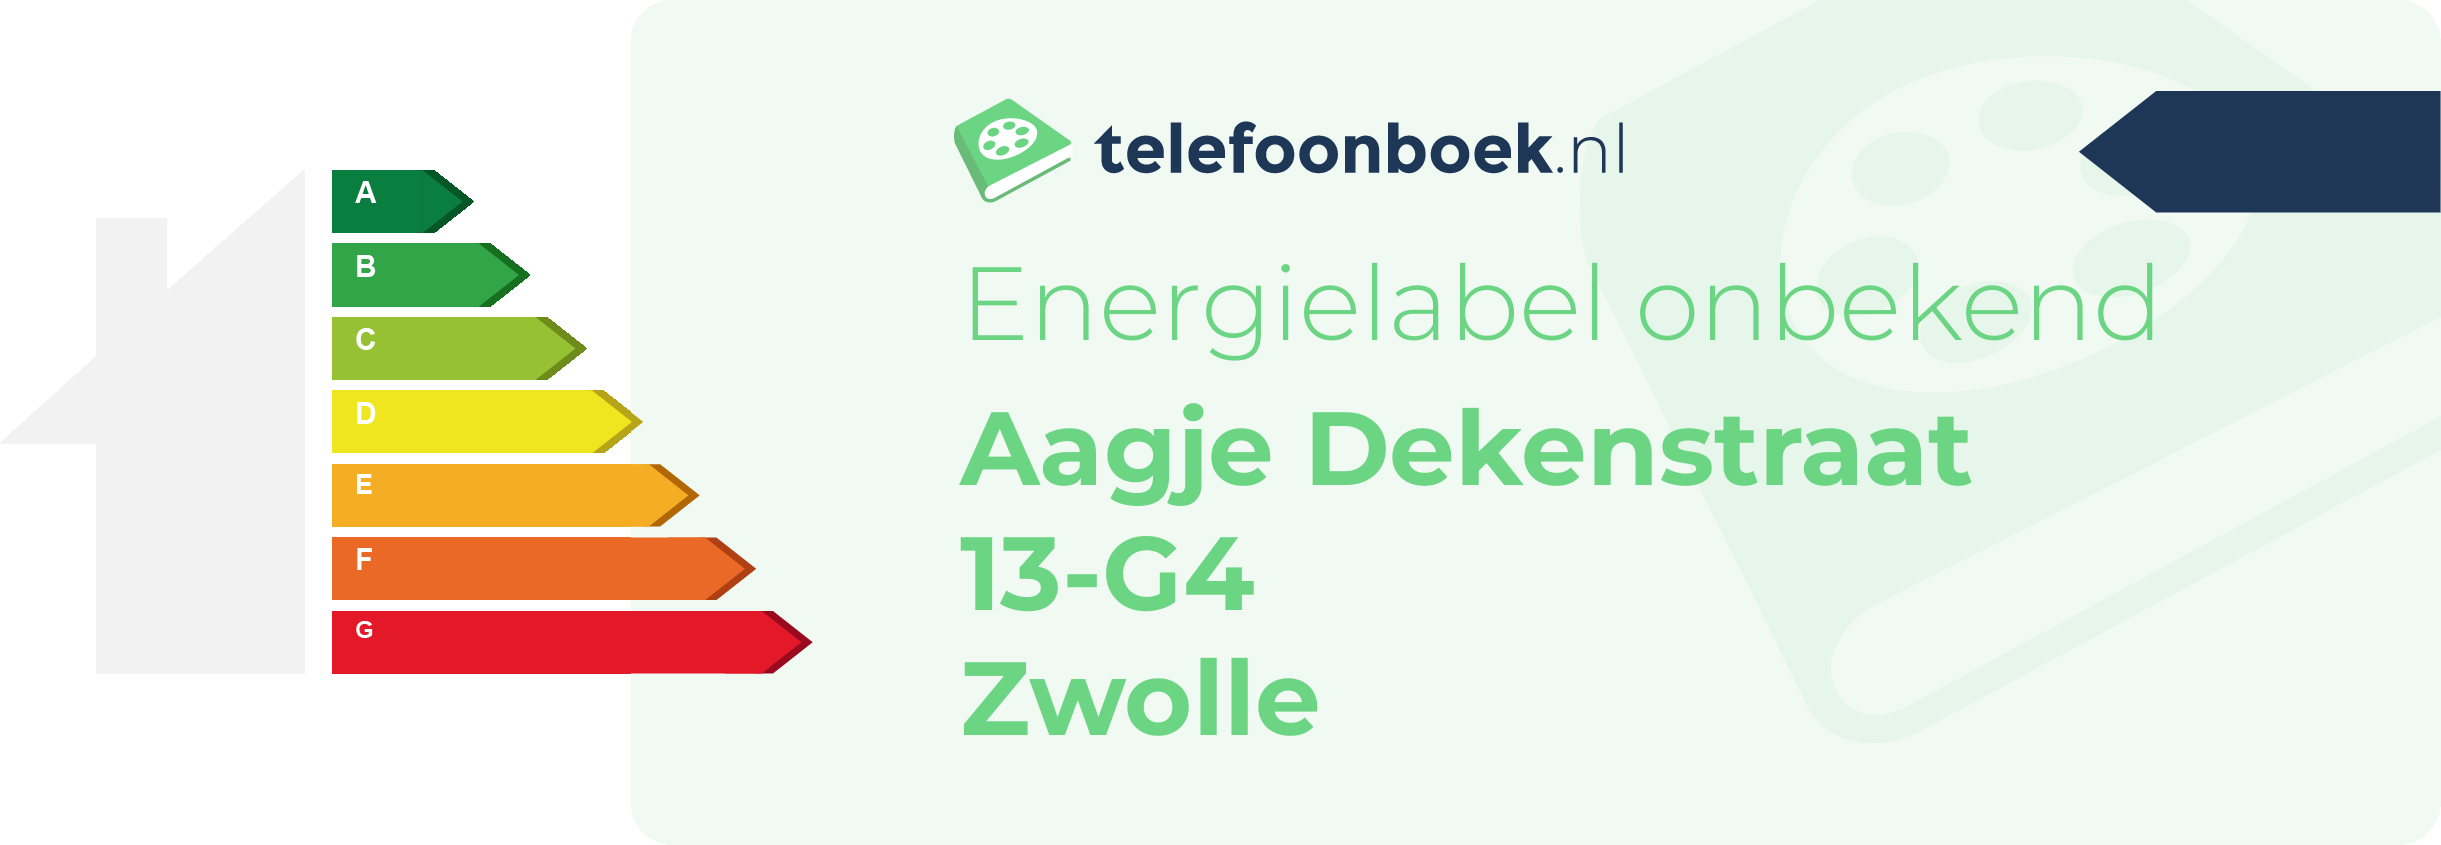 Energielabel Aagje Dekenstraat 13-G4 Zwolle